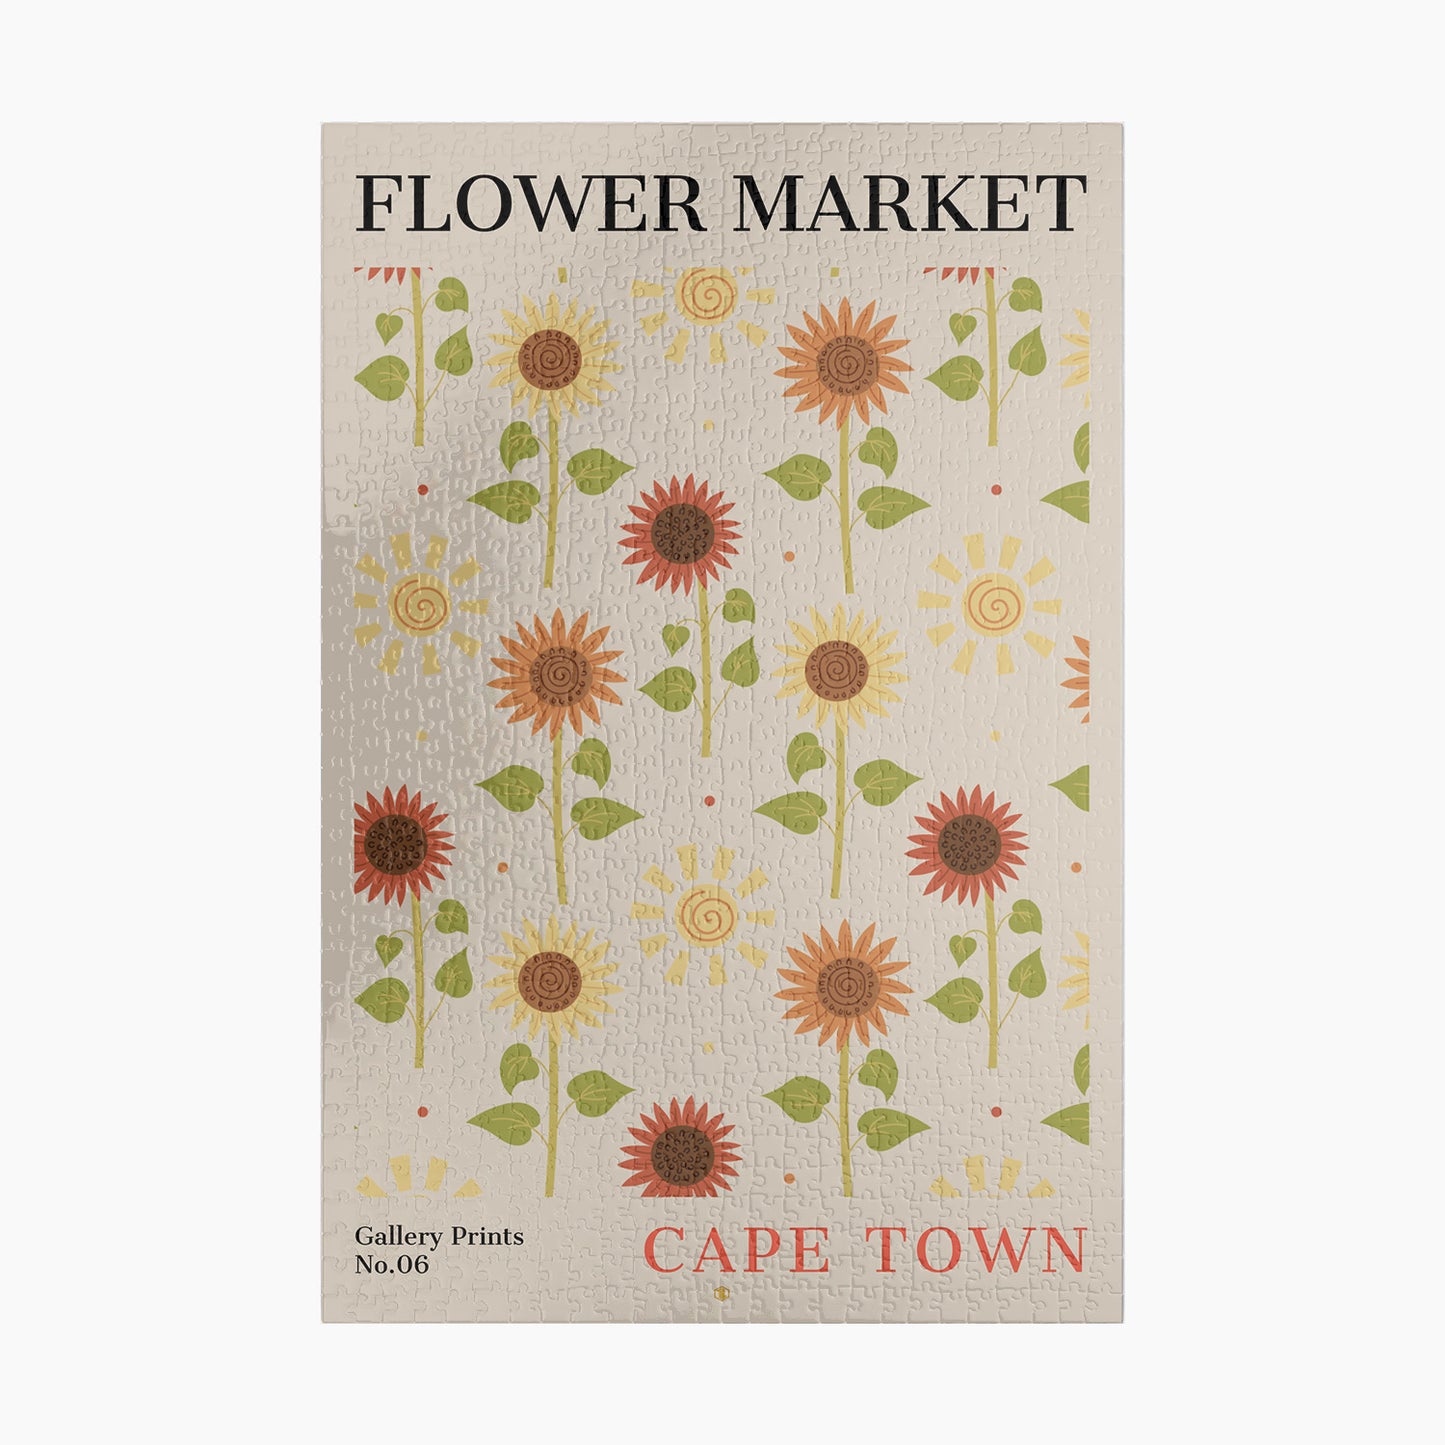 Cape Town Flower Market Puzzle | S01